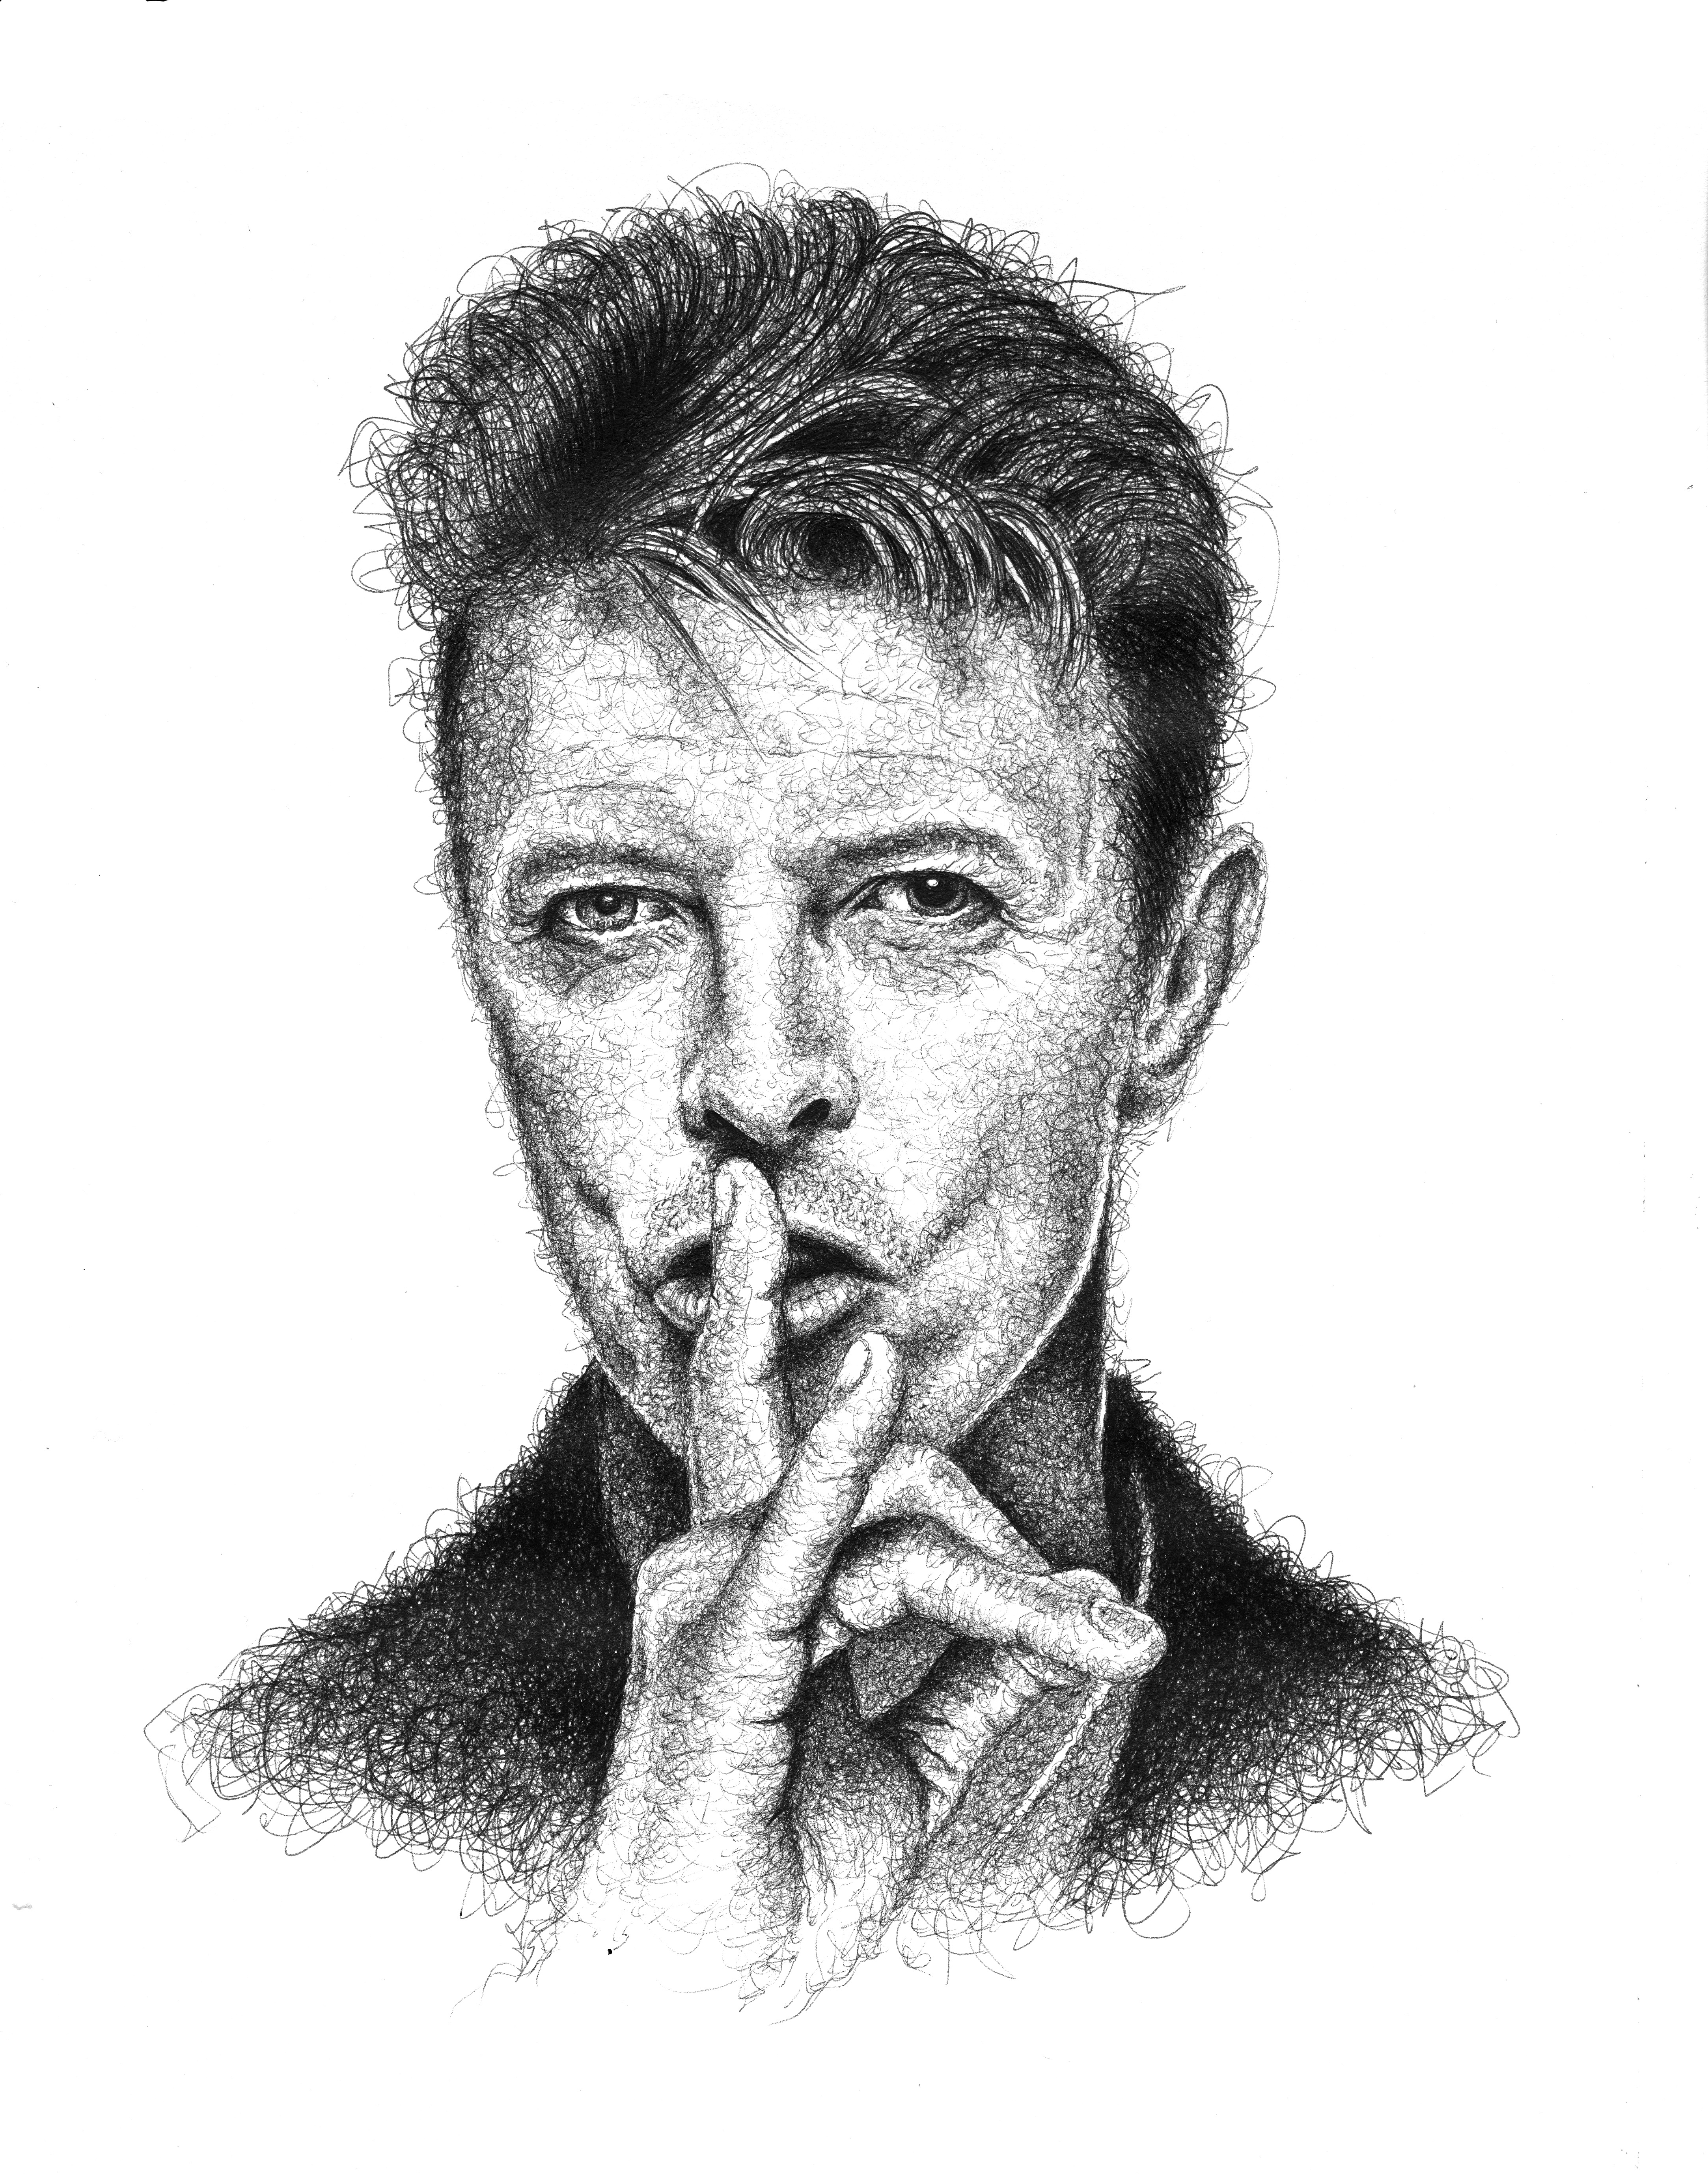 https://video-images.vice.com/_uncategorized/1497390438732-David-Bowie.jpeg